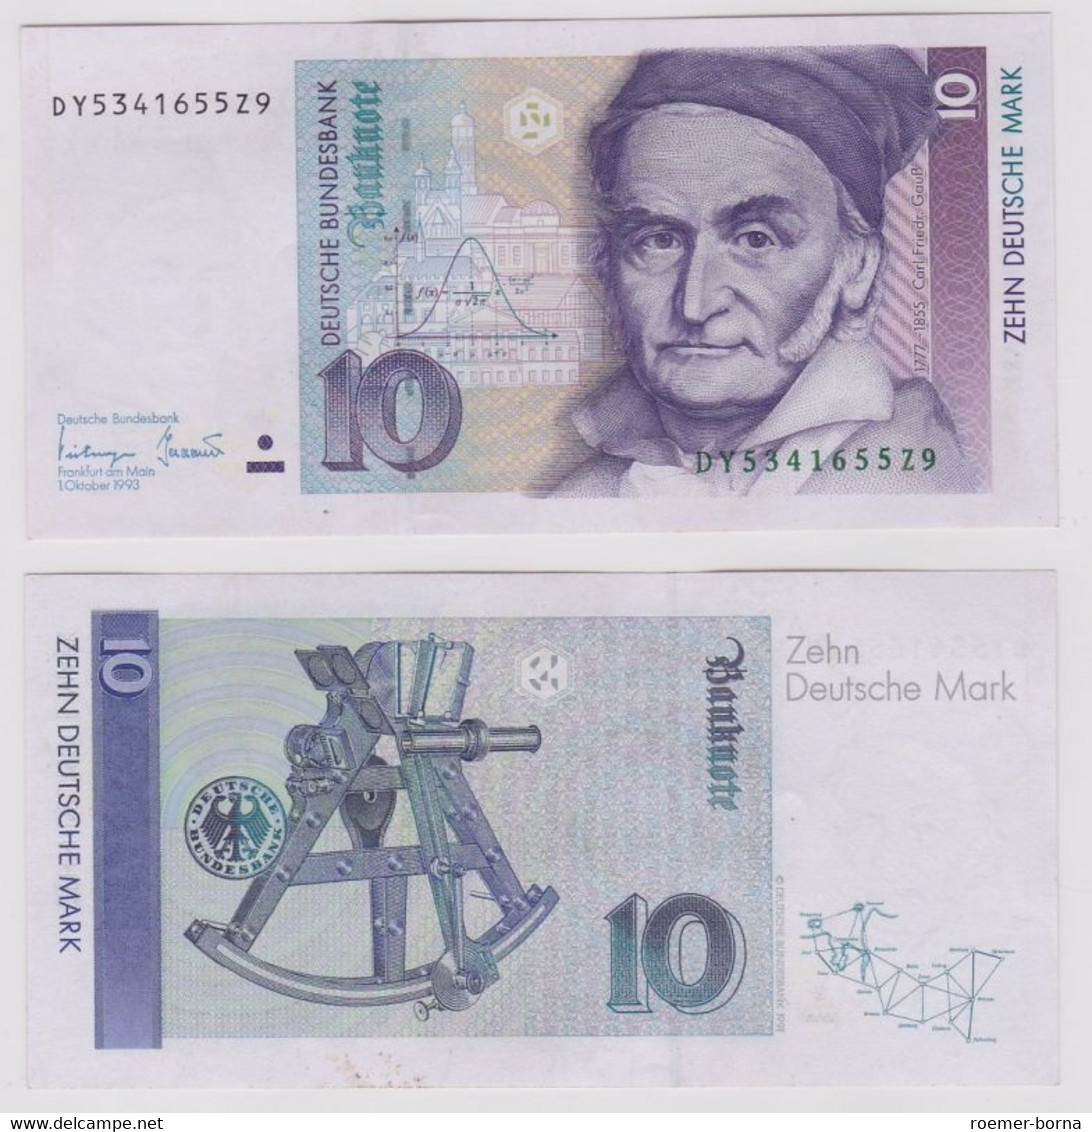 T146398 Banknote 10 DM Deutsche Mark Ro. 303a Schein 1.Okt. 1993 KN DY 5341655Z9 - 10 Deutsche Mark